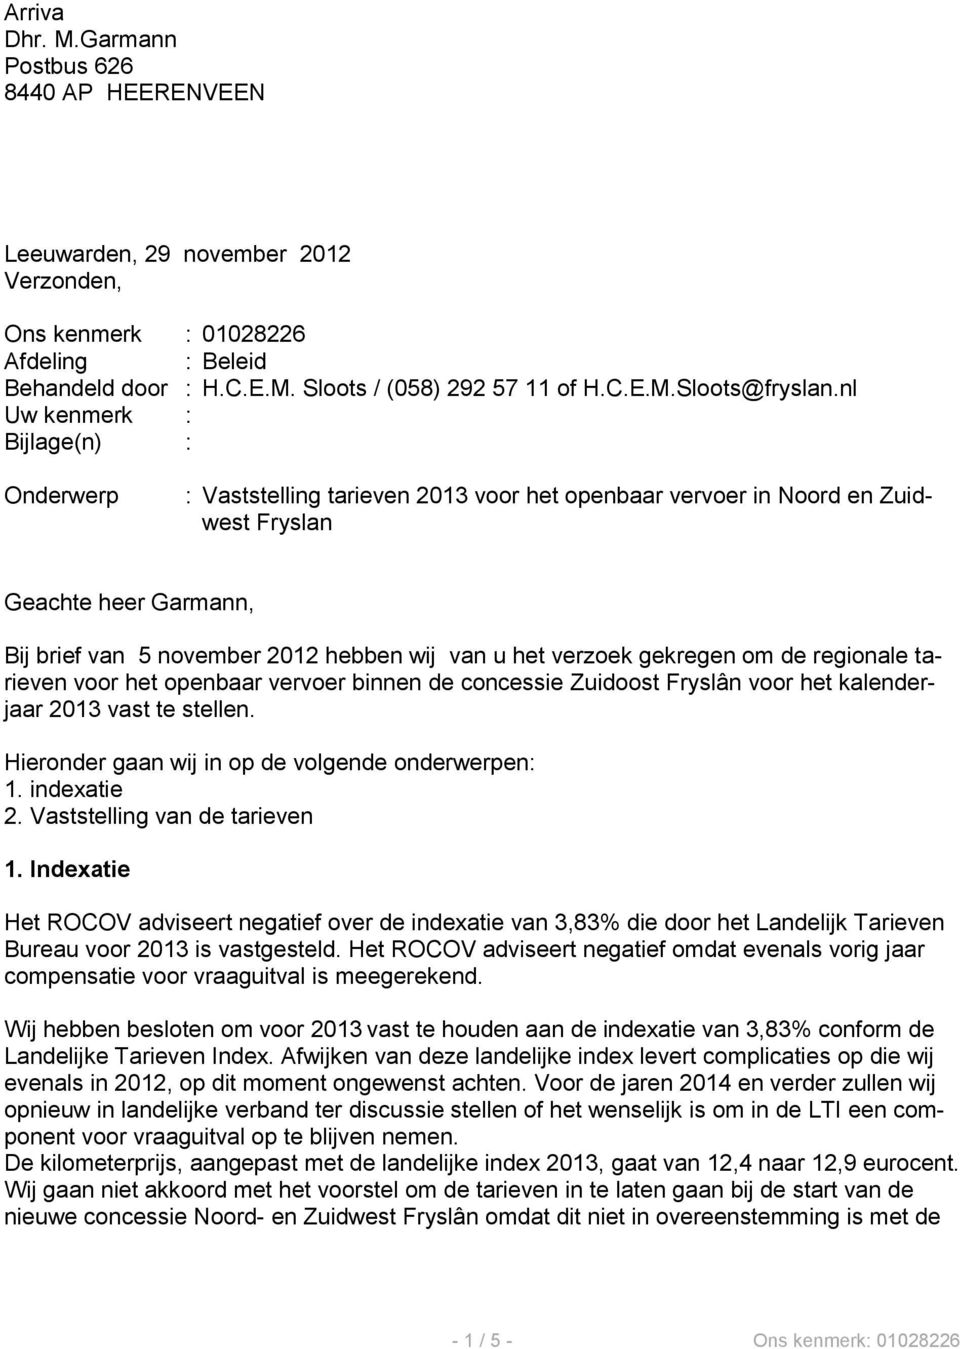 verzoek gekregen om de regionale tarieven voor het openbaar vervoer binnen de concessie Zuidoost Fryslân voor het kalenderjaar 2013 vast te stellen.